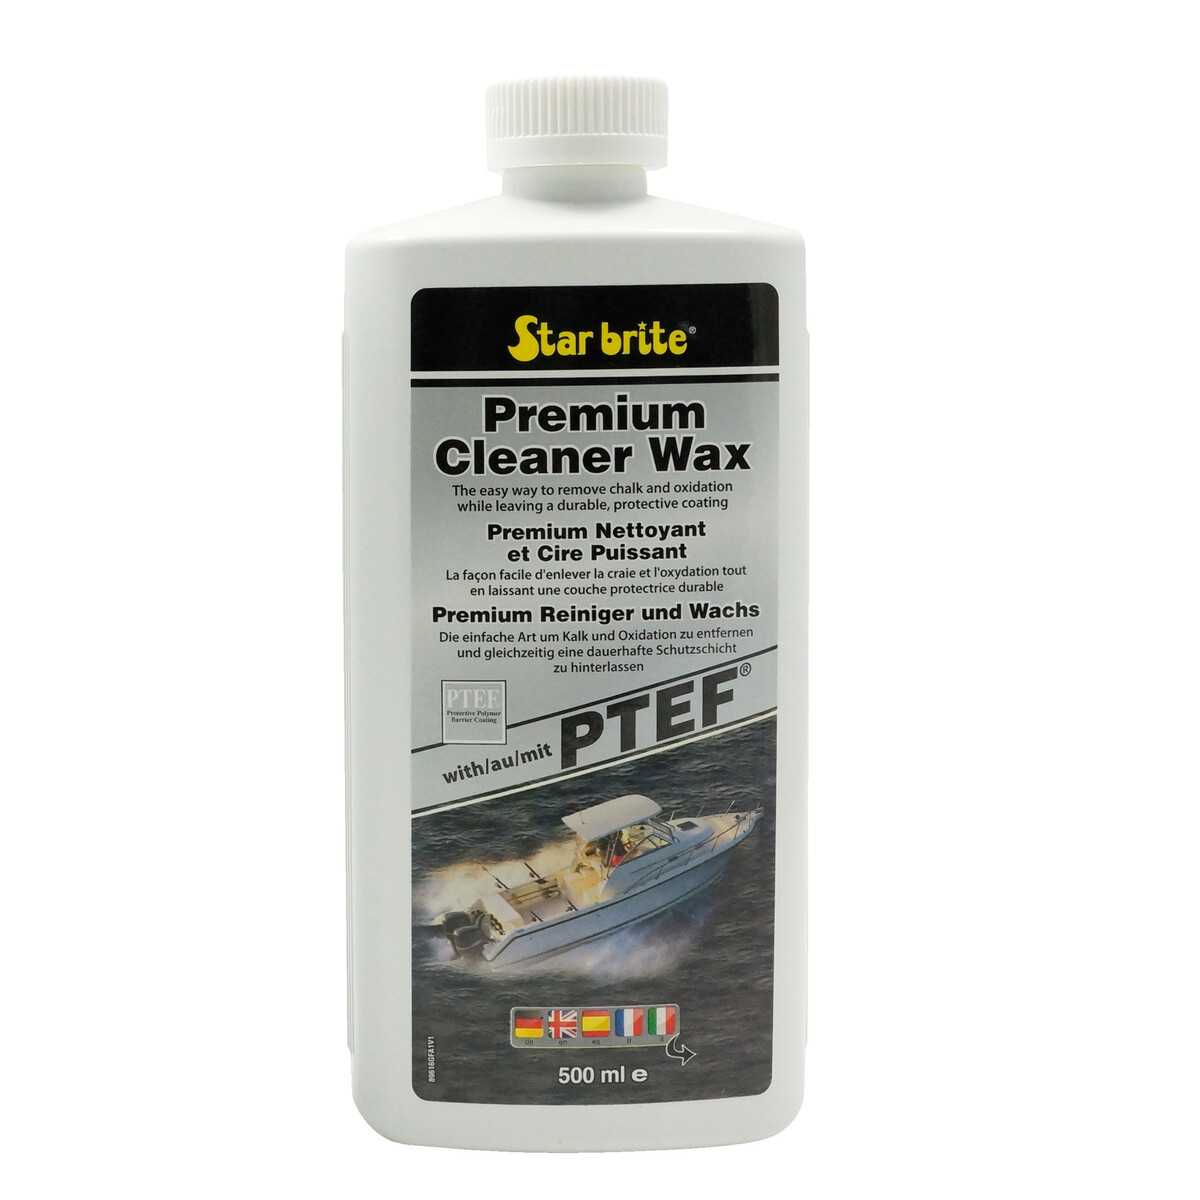 Premium Cleaner Wax mit PTEF, 500 ml